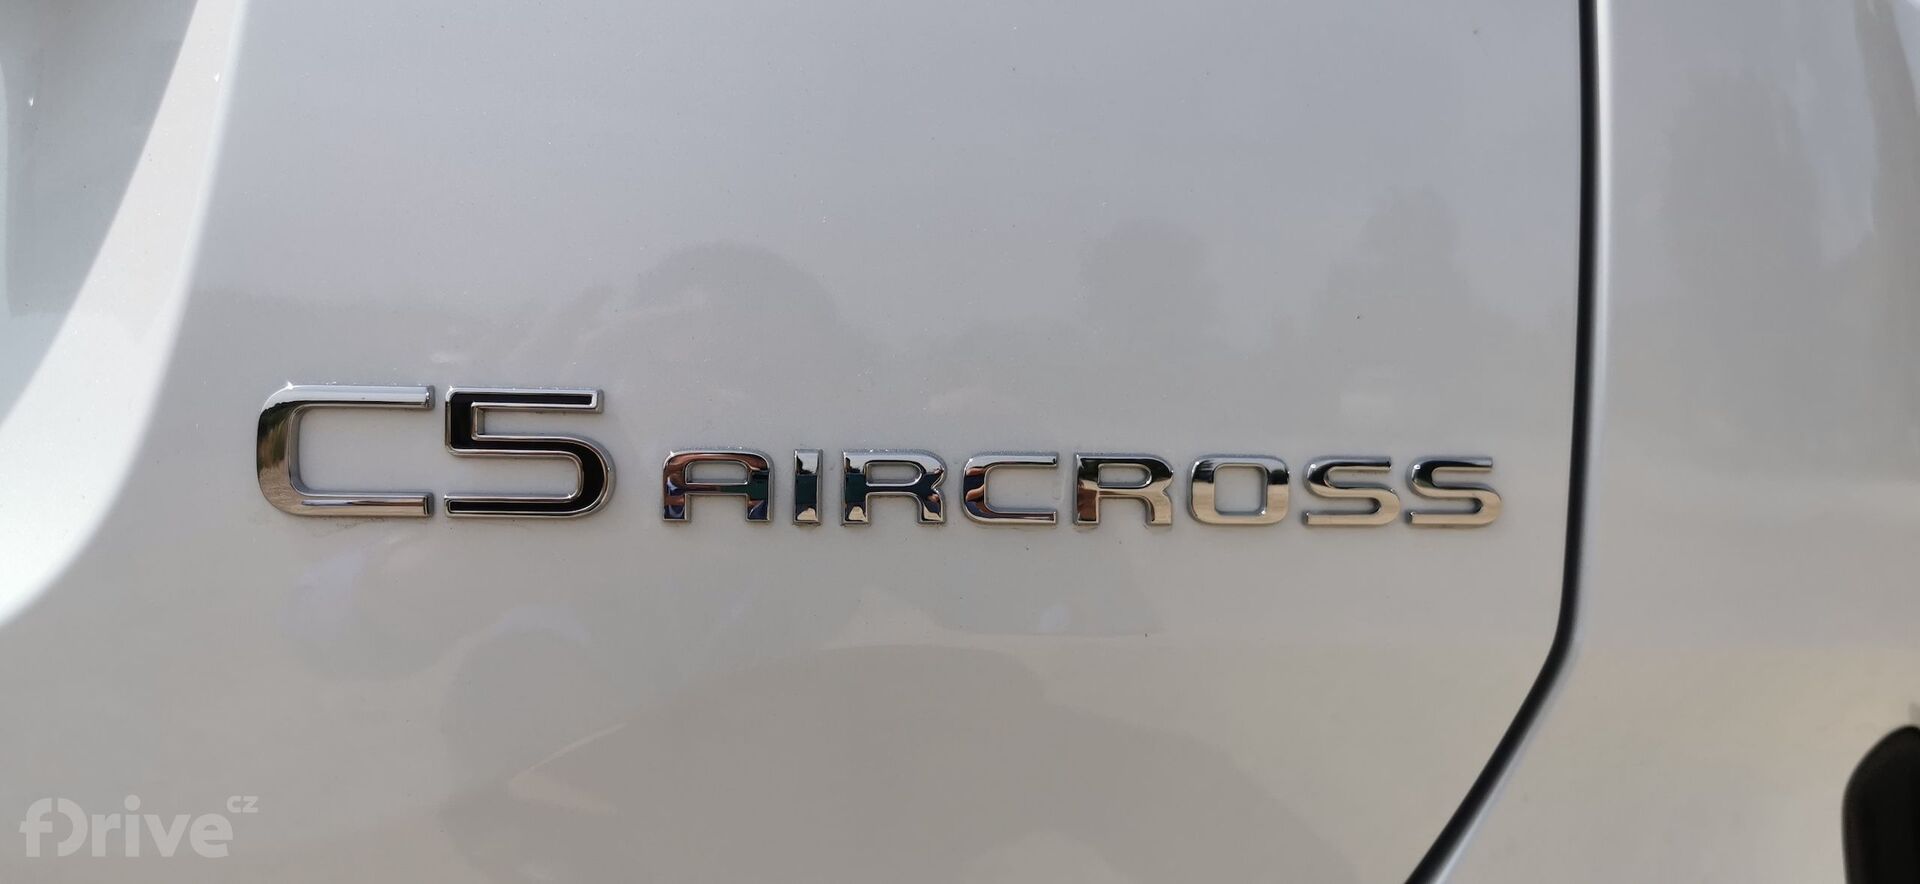 Citroën C5 Aircross PHEV (2022)